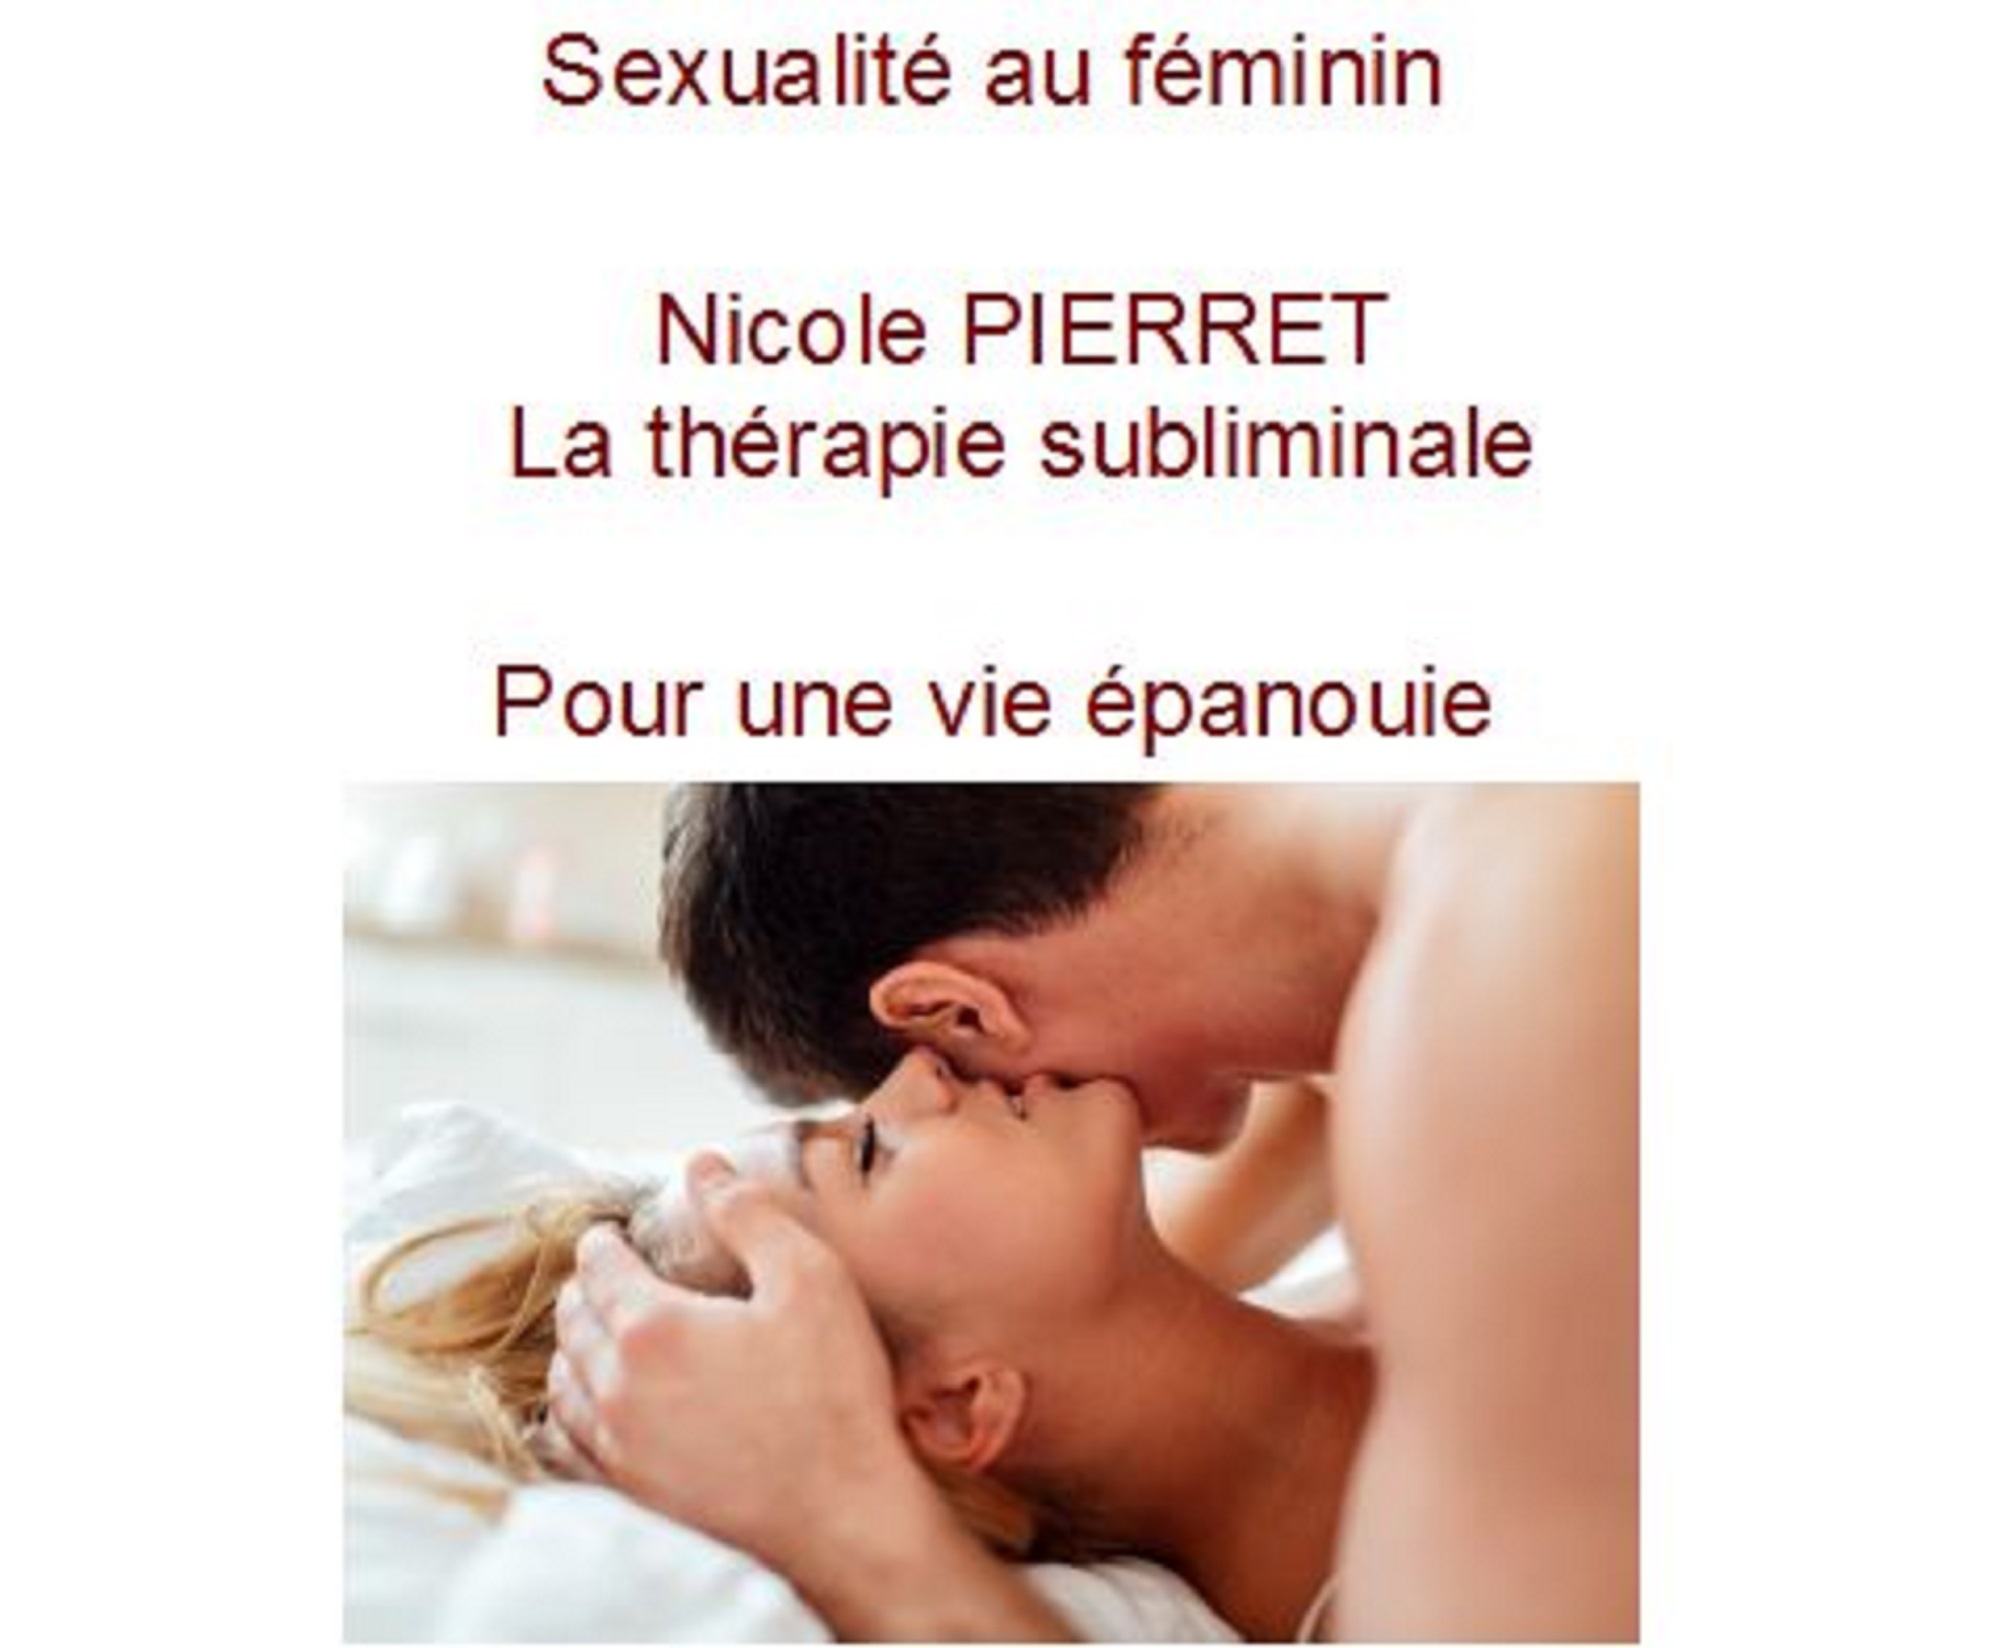 sexualité au féminin thérapie subliminale nicole pierret.JPG